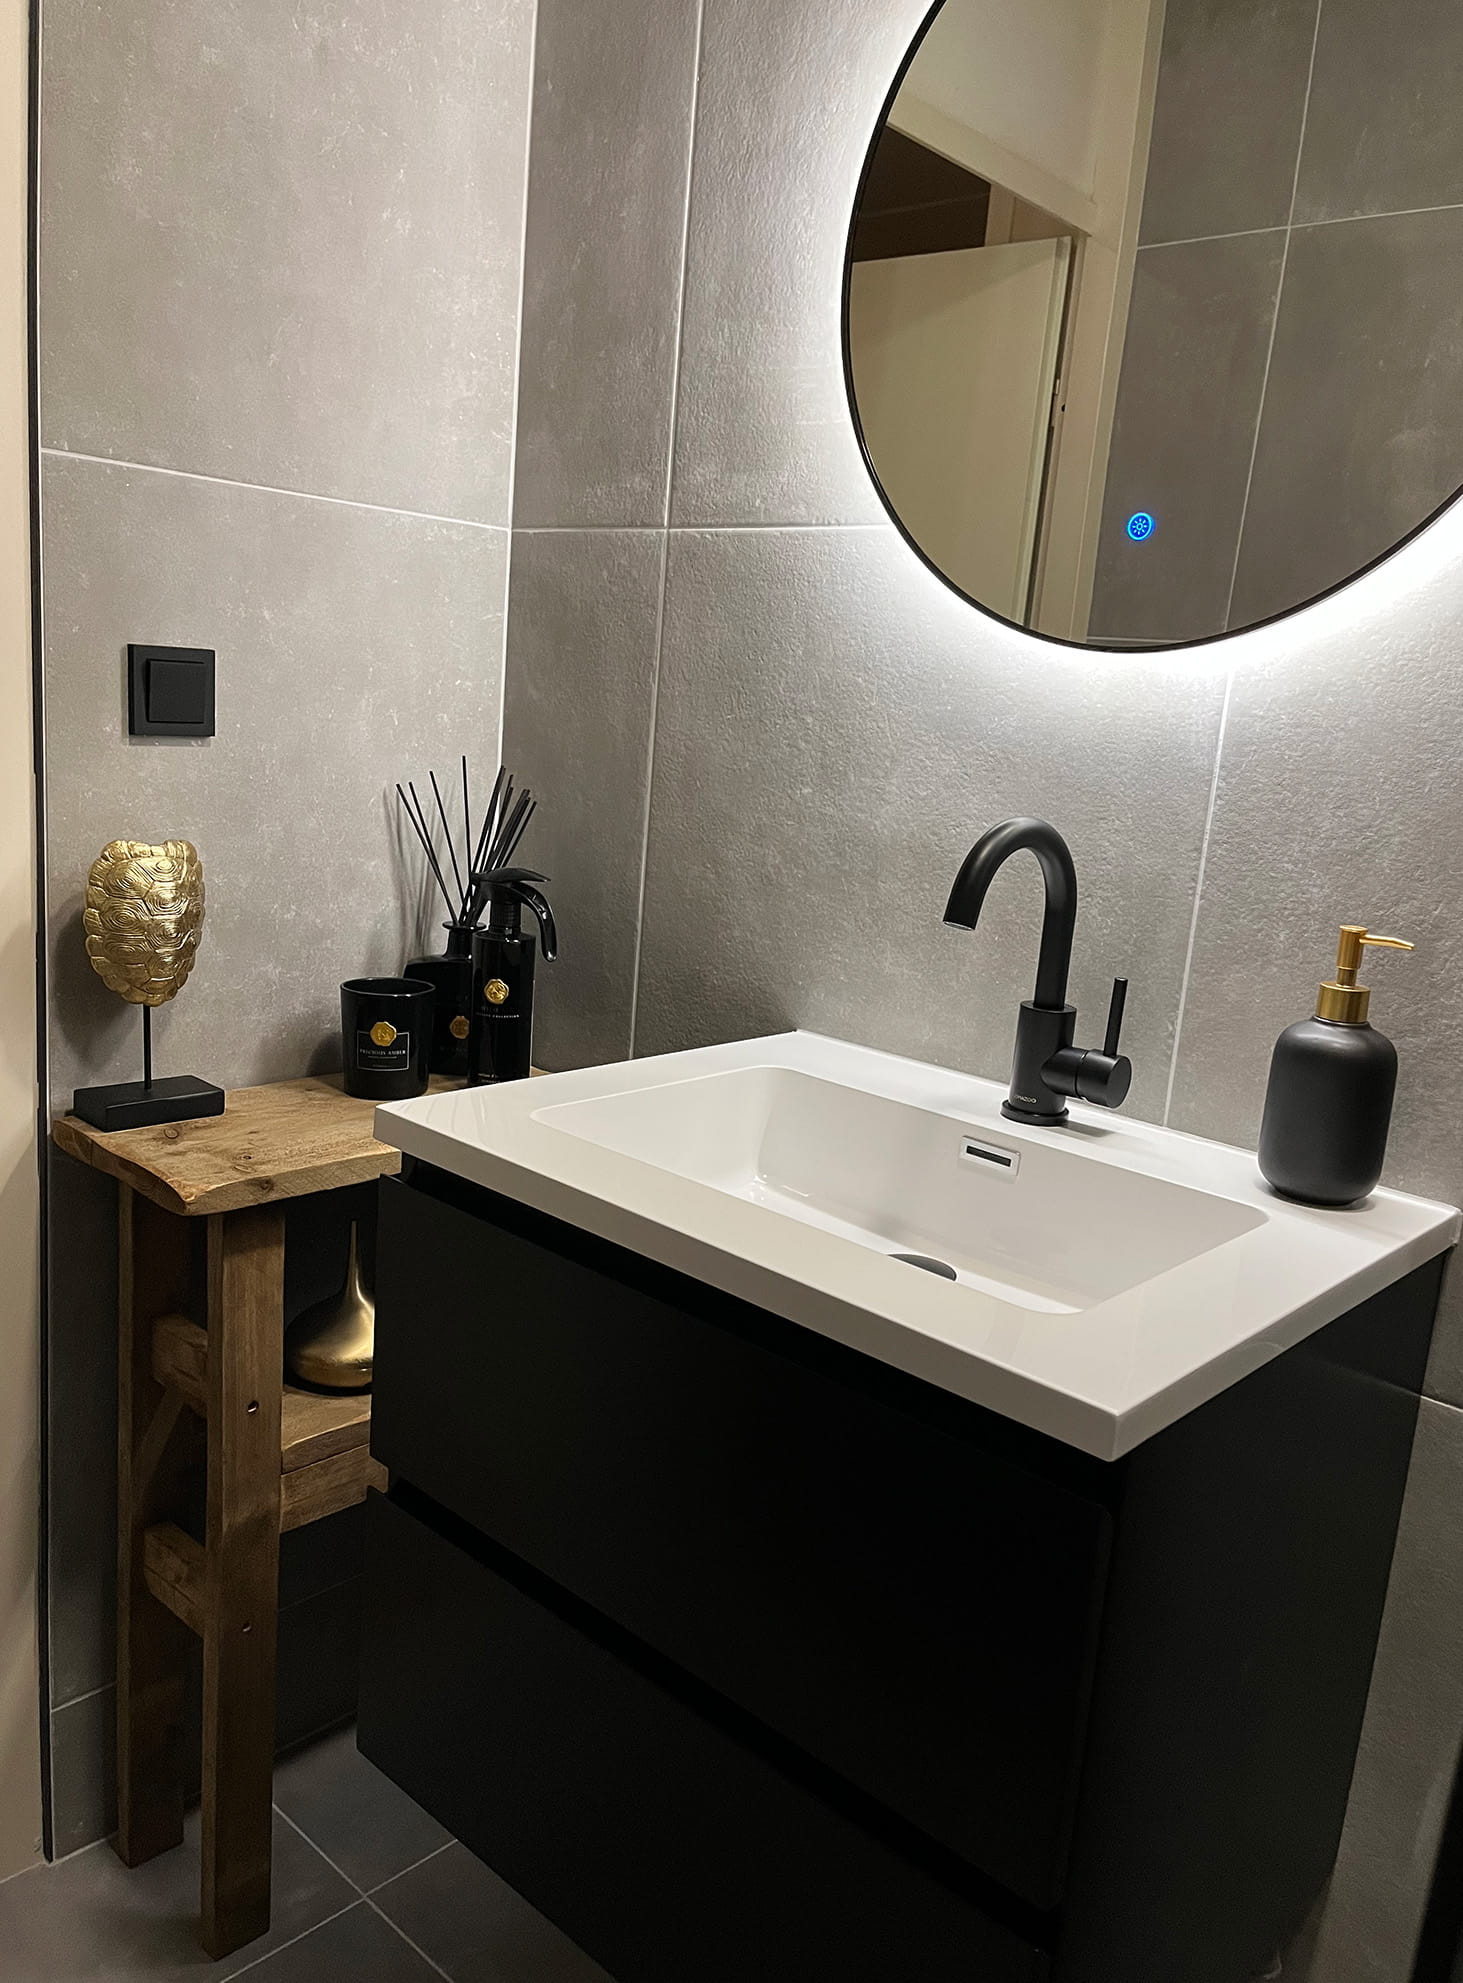 Complete badkamer in luxe stijl - Vika